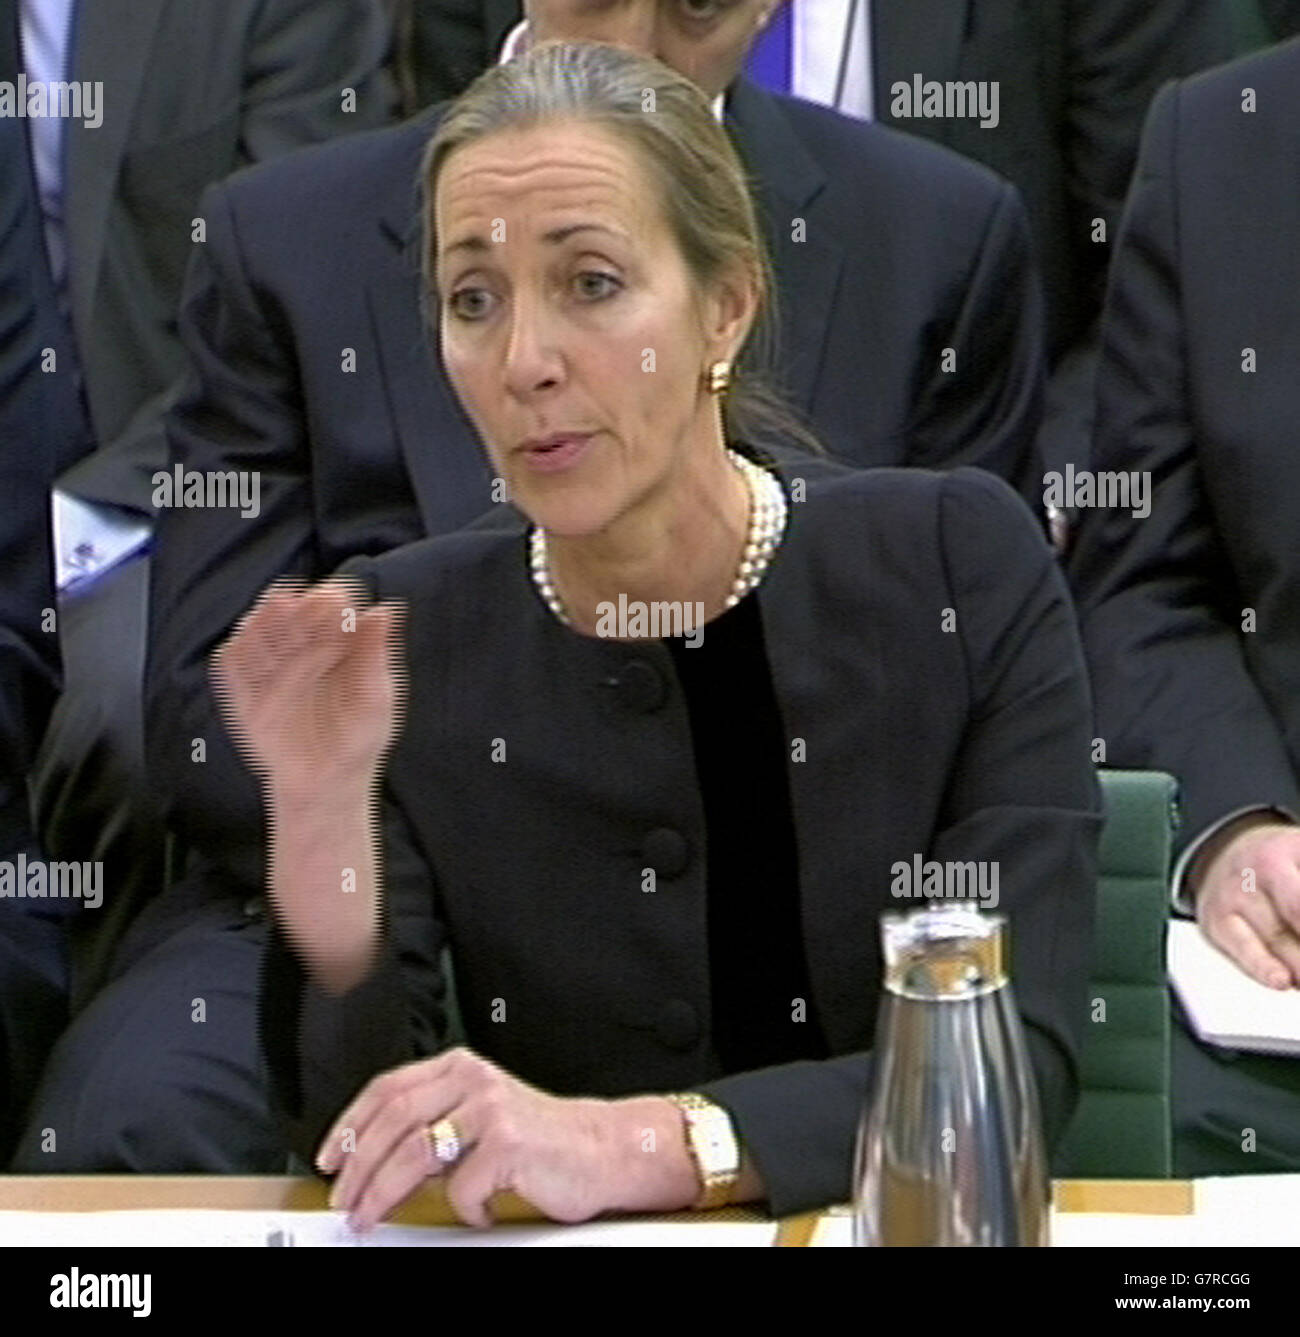 Rona Fairhead, présidente de la BBC Trust et directrice non exécutive de HSBC, a témoigné devant le Comité des comptes publics de la Chambre des communes de Portcullis à Londres, sur l'évasion fiscale. Banque D'Images